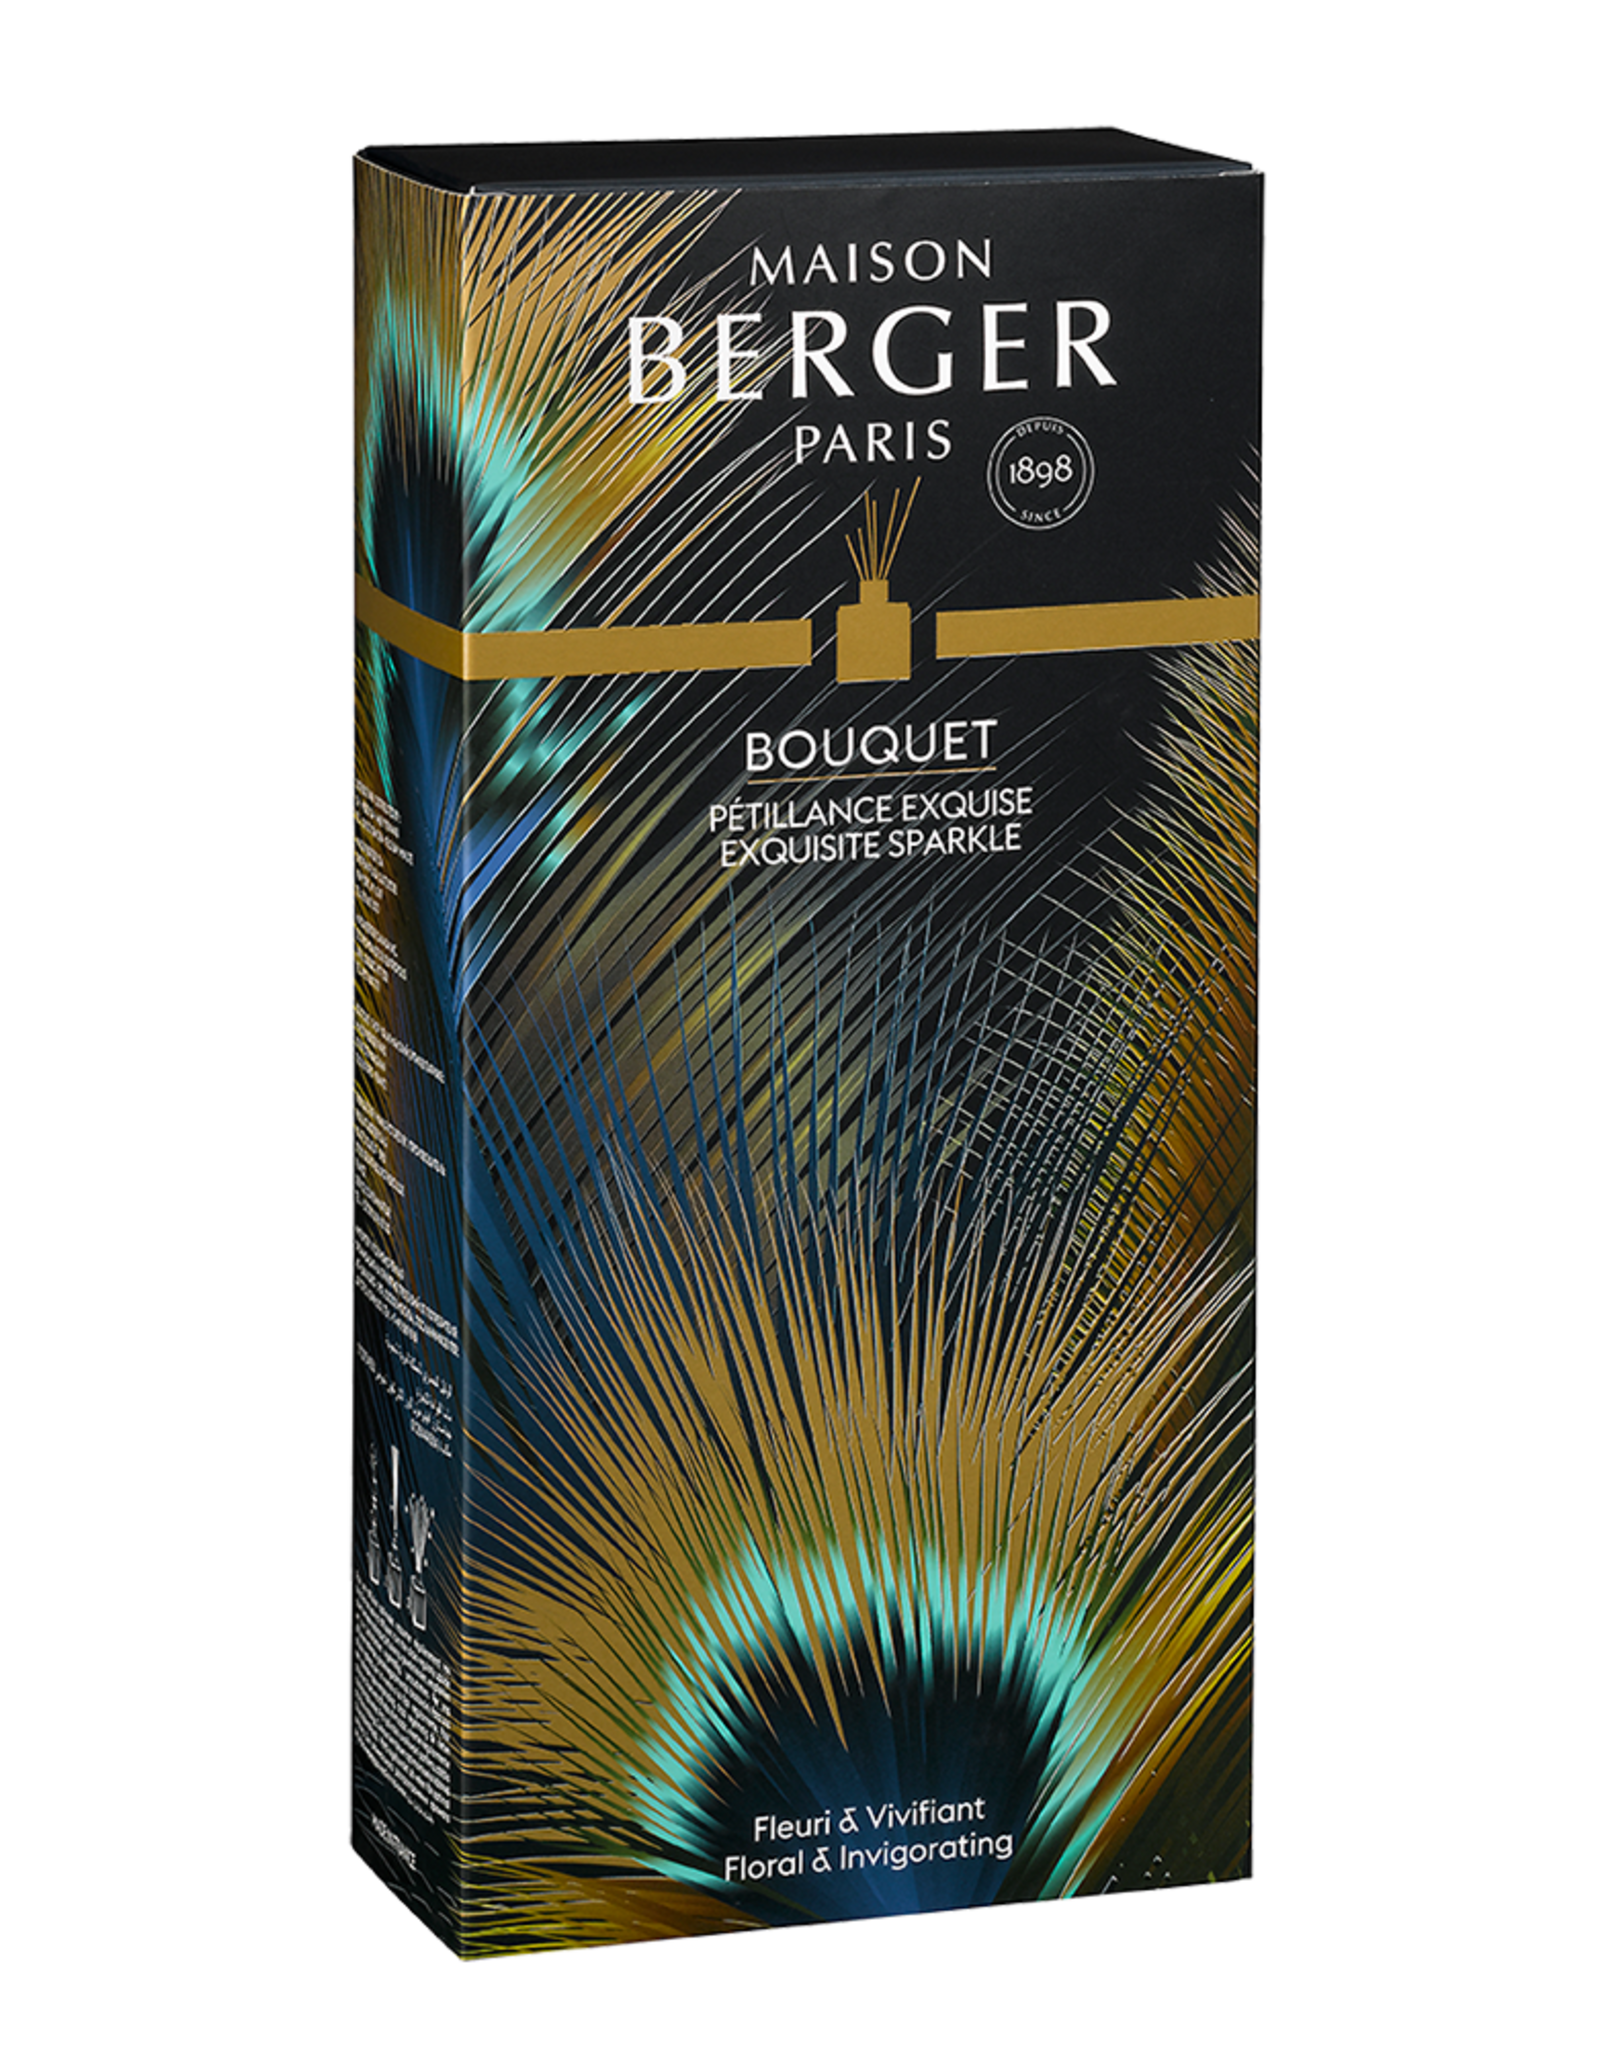 Maison Berger Bouquet Etincelle Reed Diffuser Exquisite Sparkle Fragrance